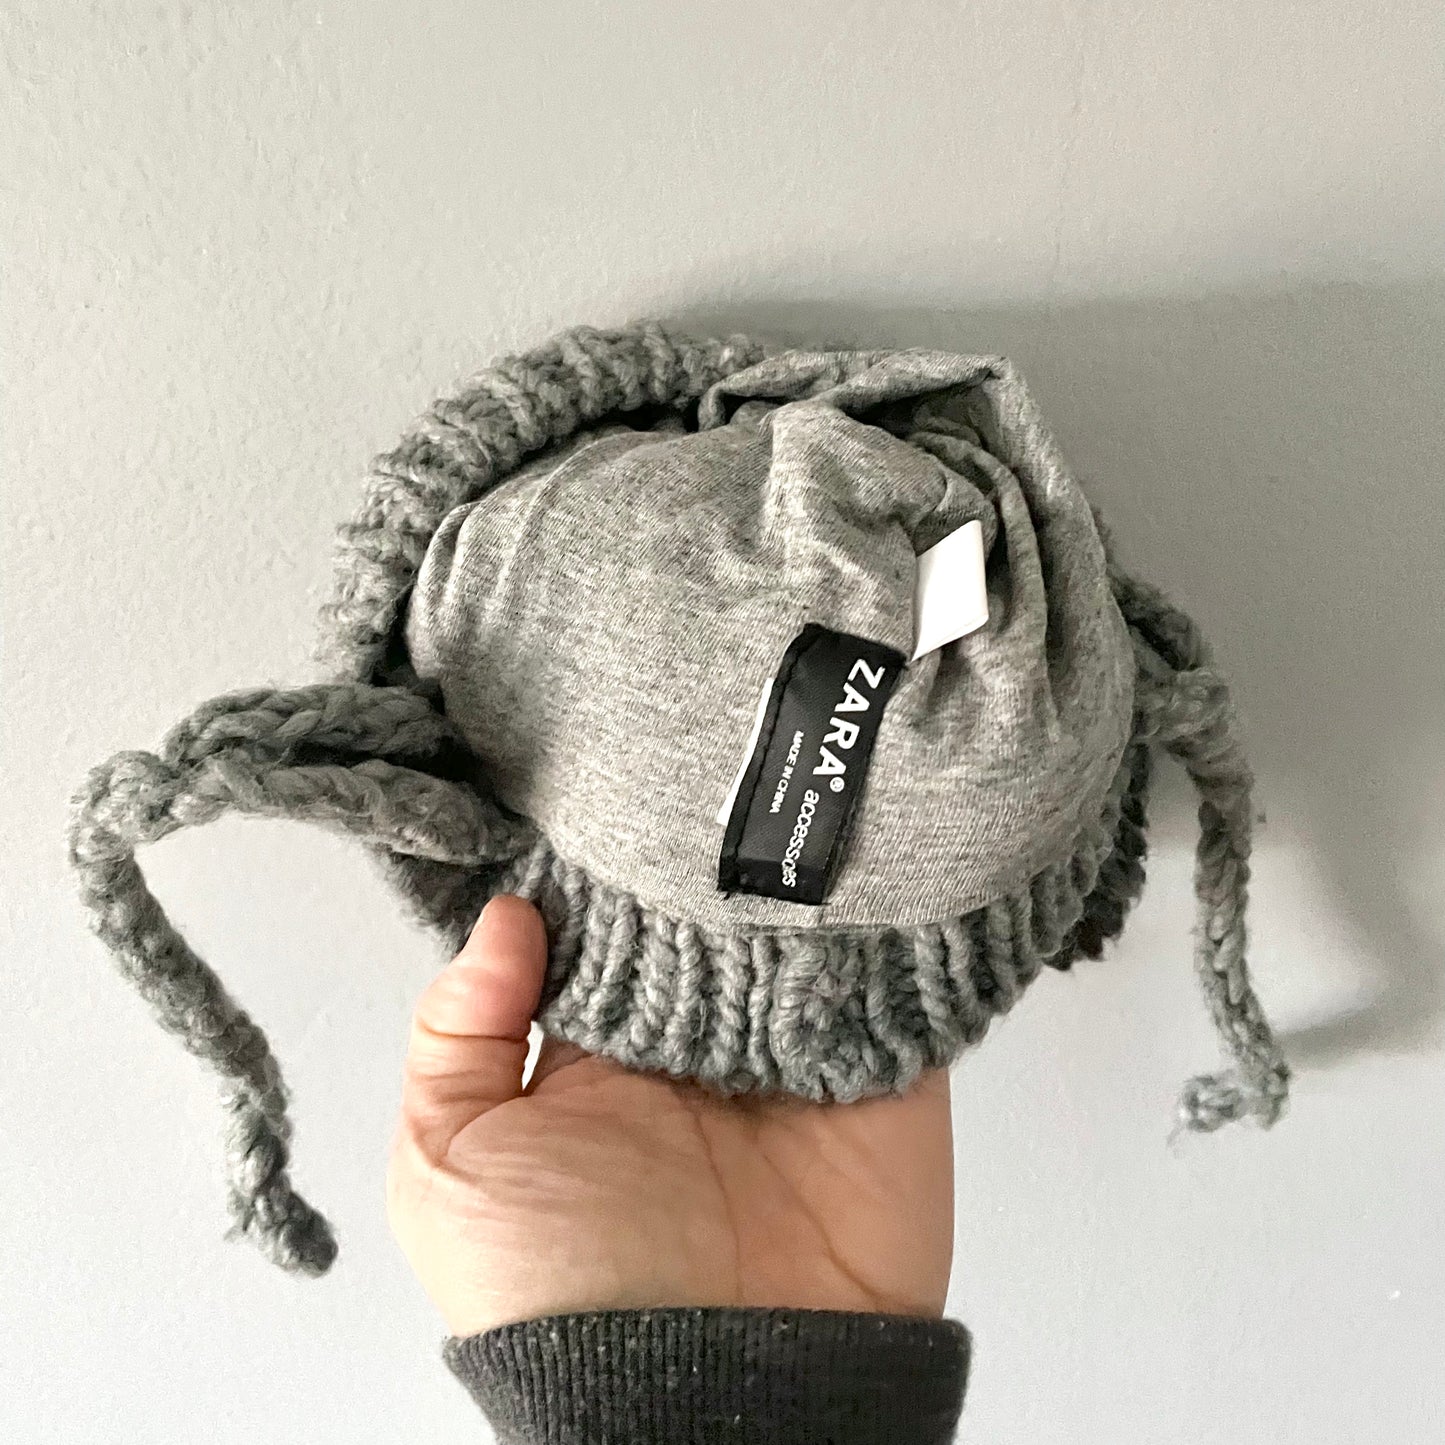 Zara / Koala knit hat / 6-12M